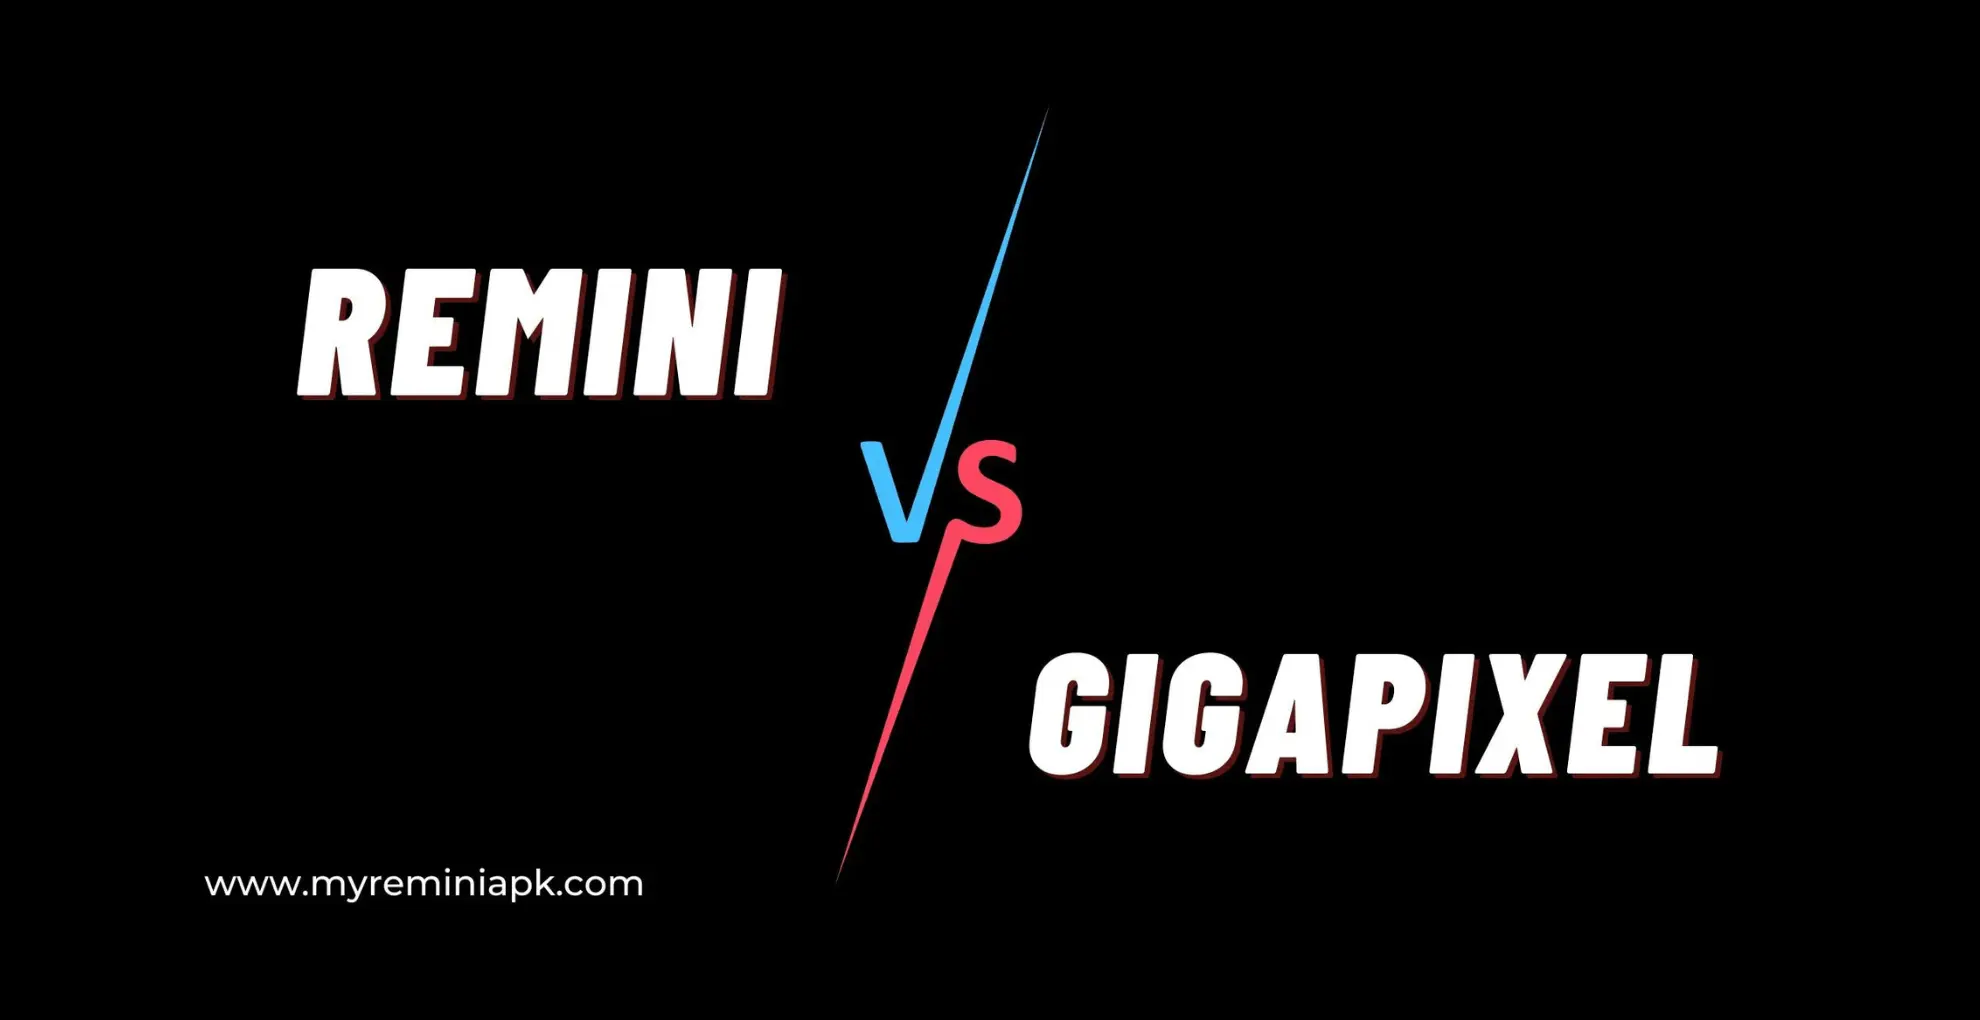 Remini vs Gigapixel